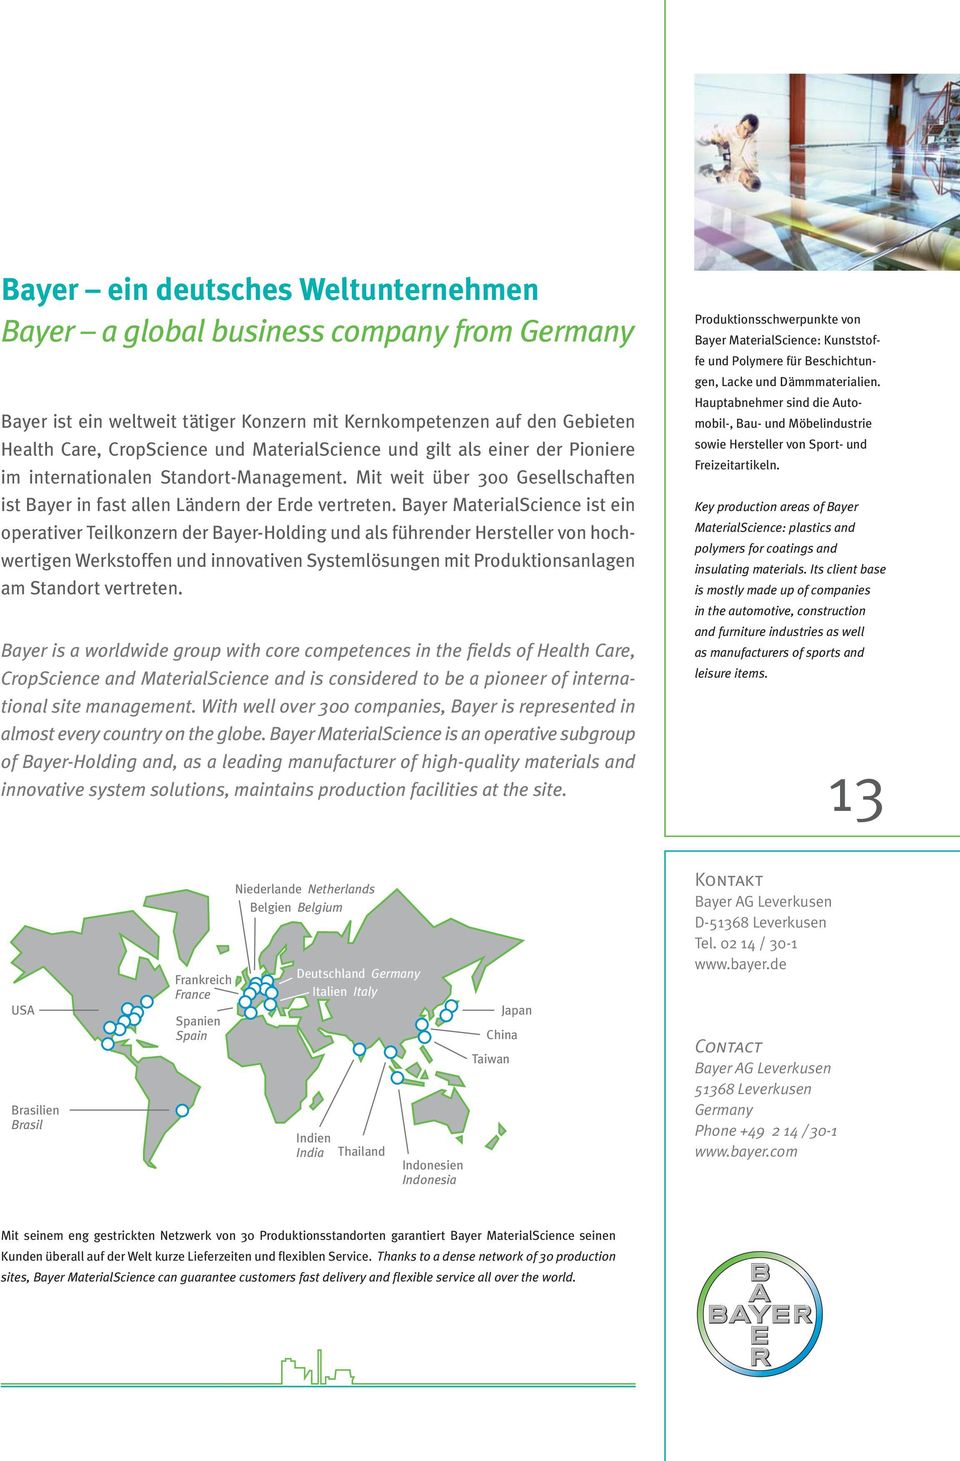 Bayer MaterialScience ist ein operativer Teilkonzern der Bayer-Holding und als führender Hersteller von hochwertigen Werkstoffen und innovativen Systemlösungen mit Produktionsanlagen am Standort